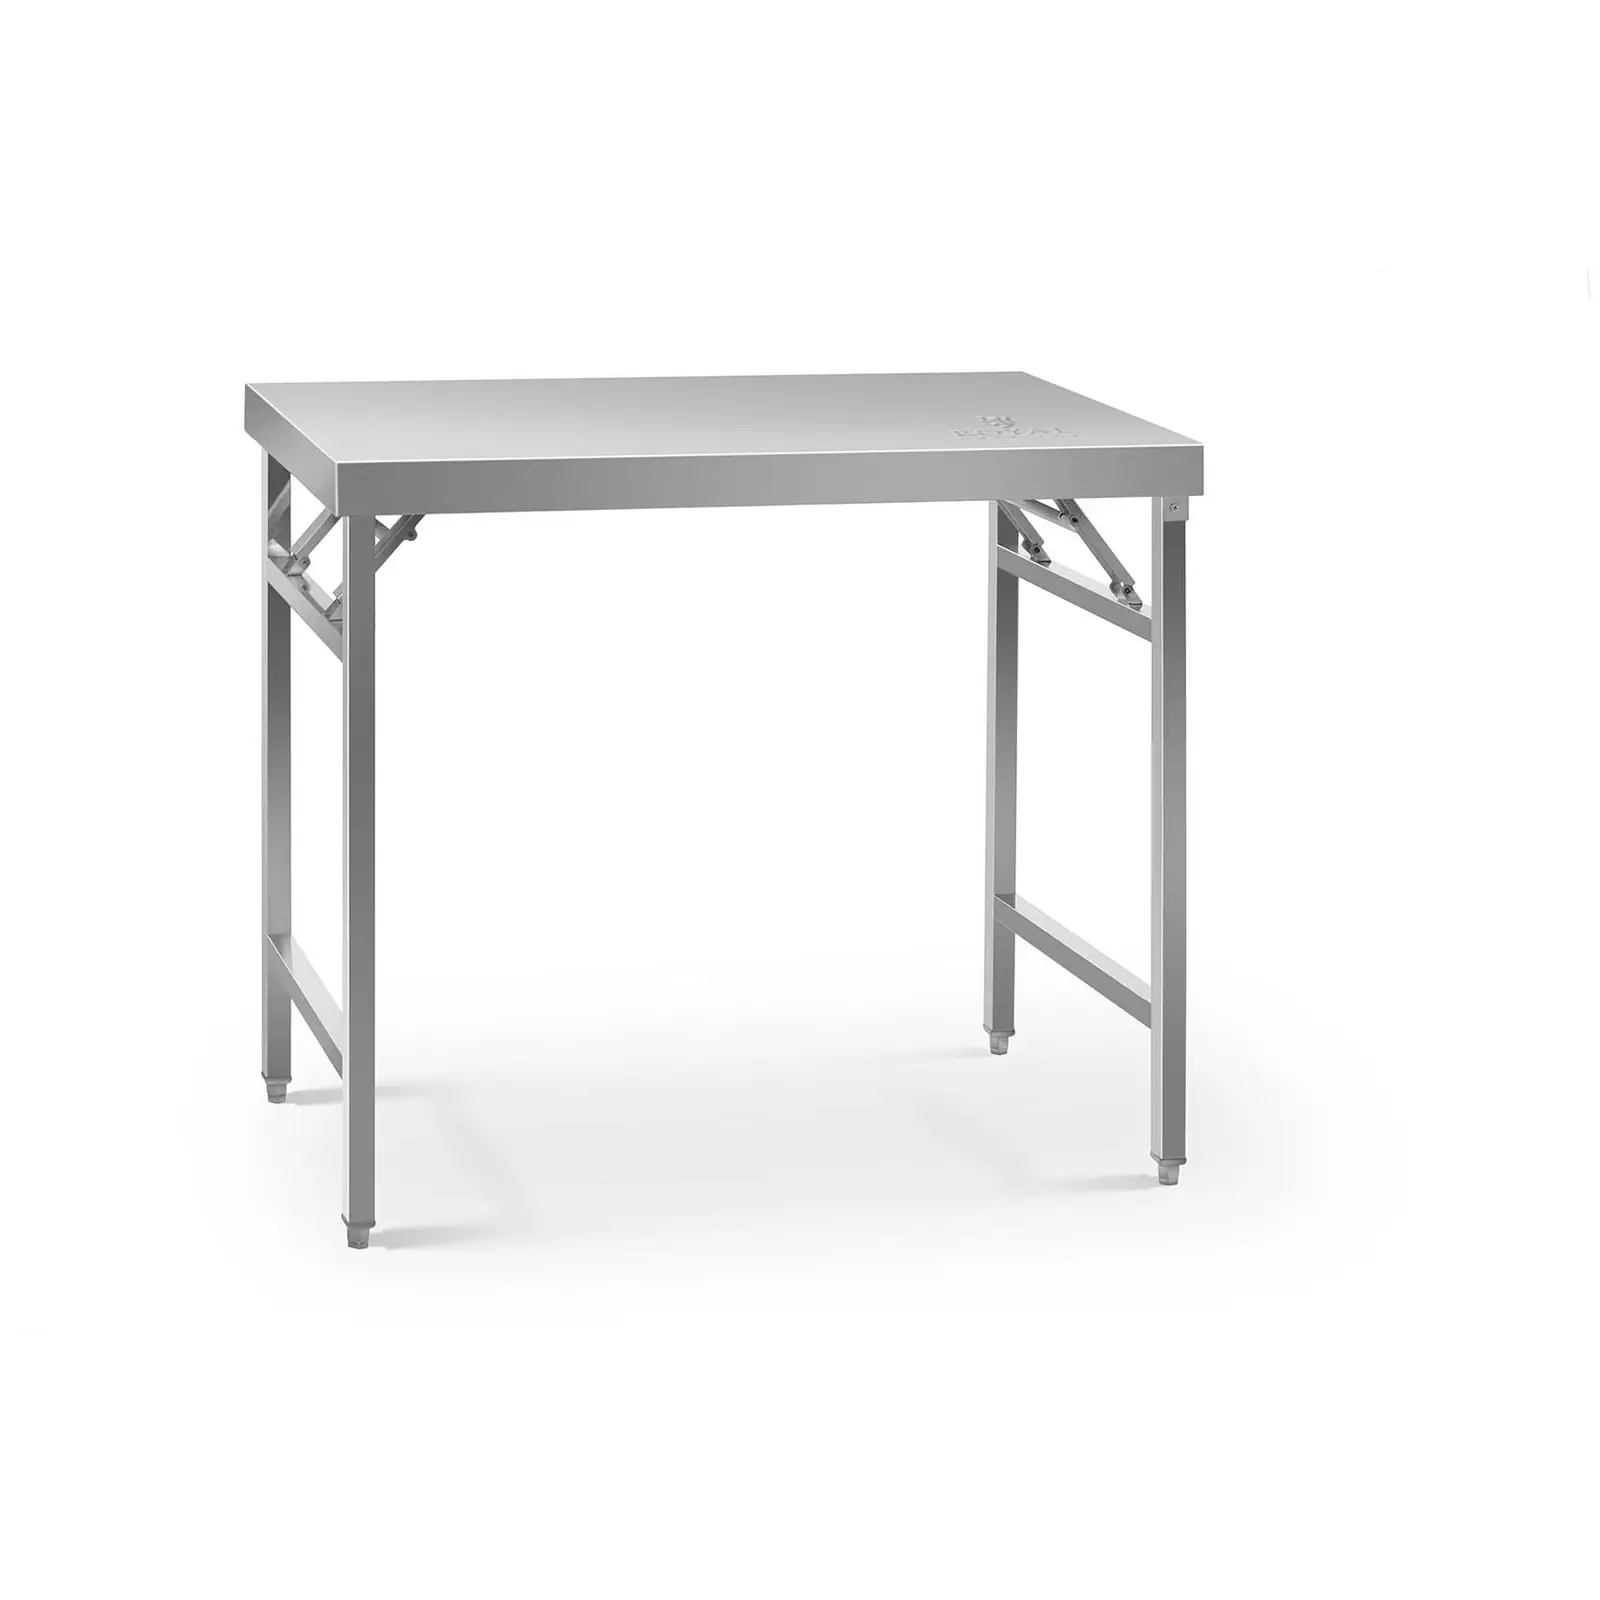 Skládací stůl - 60 x 100 cm - nosnost 200 kg